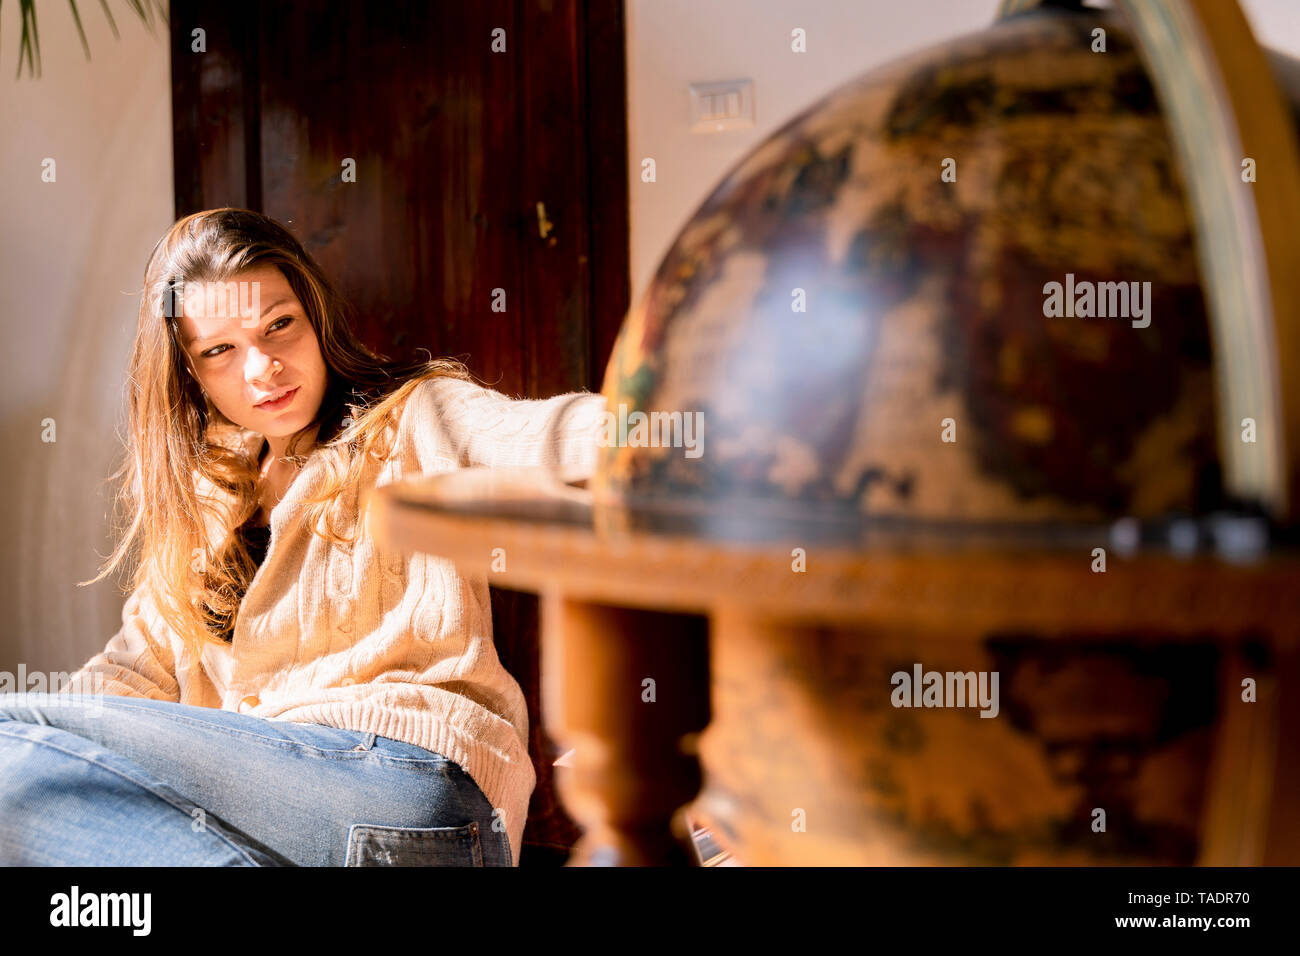 Junge Frau sitzend mit Kugel, auf der Suche nach Reisezielen Stockfoto